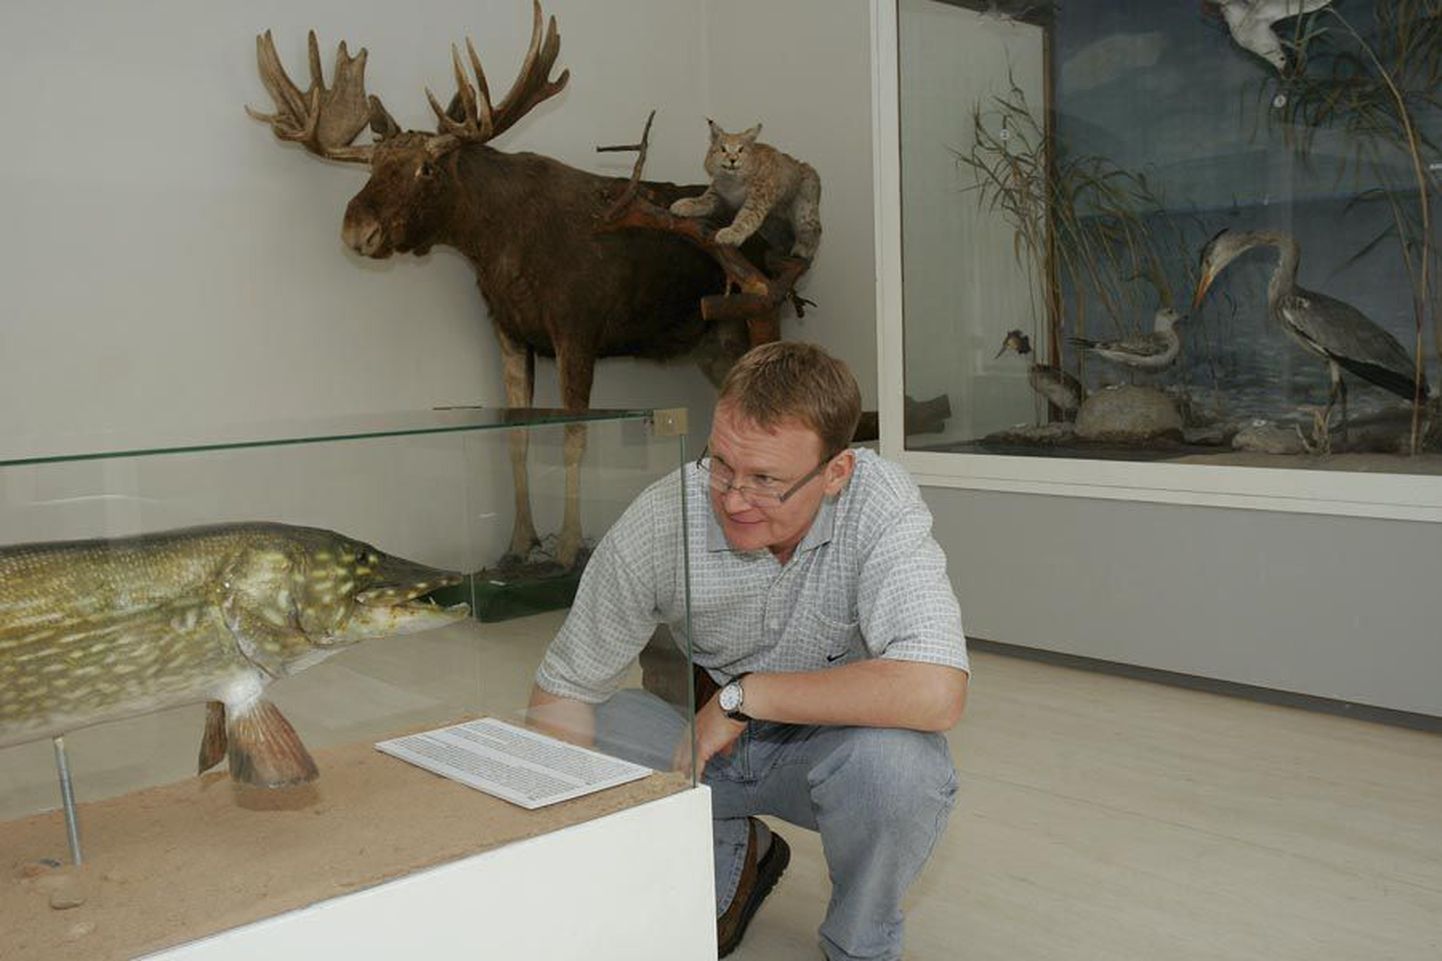 iljandi muuseumi kauaaegse direktori Jaak Pihlaku meelest peaks siinne muuseum jätkama Viljandimaa koduloo uurimist ja talletamist ning nišimuuseumiks muutumist tema ei poolda.